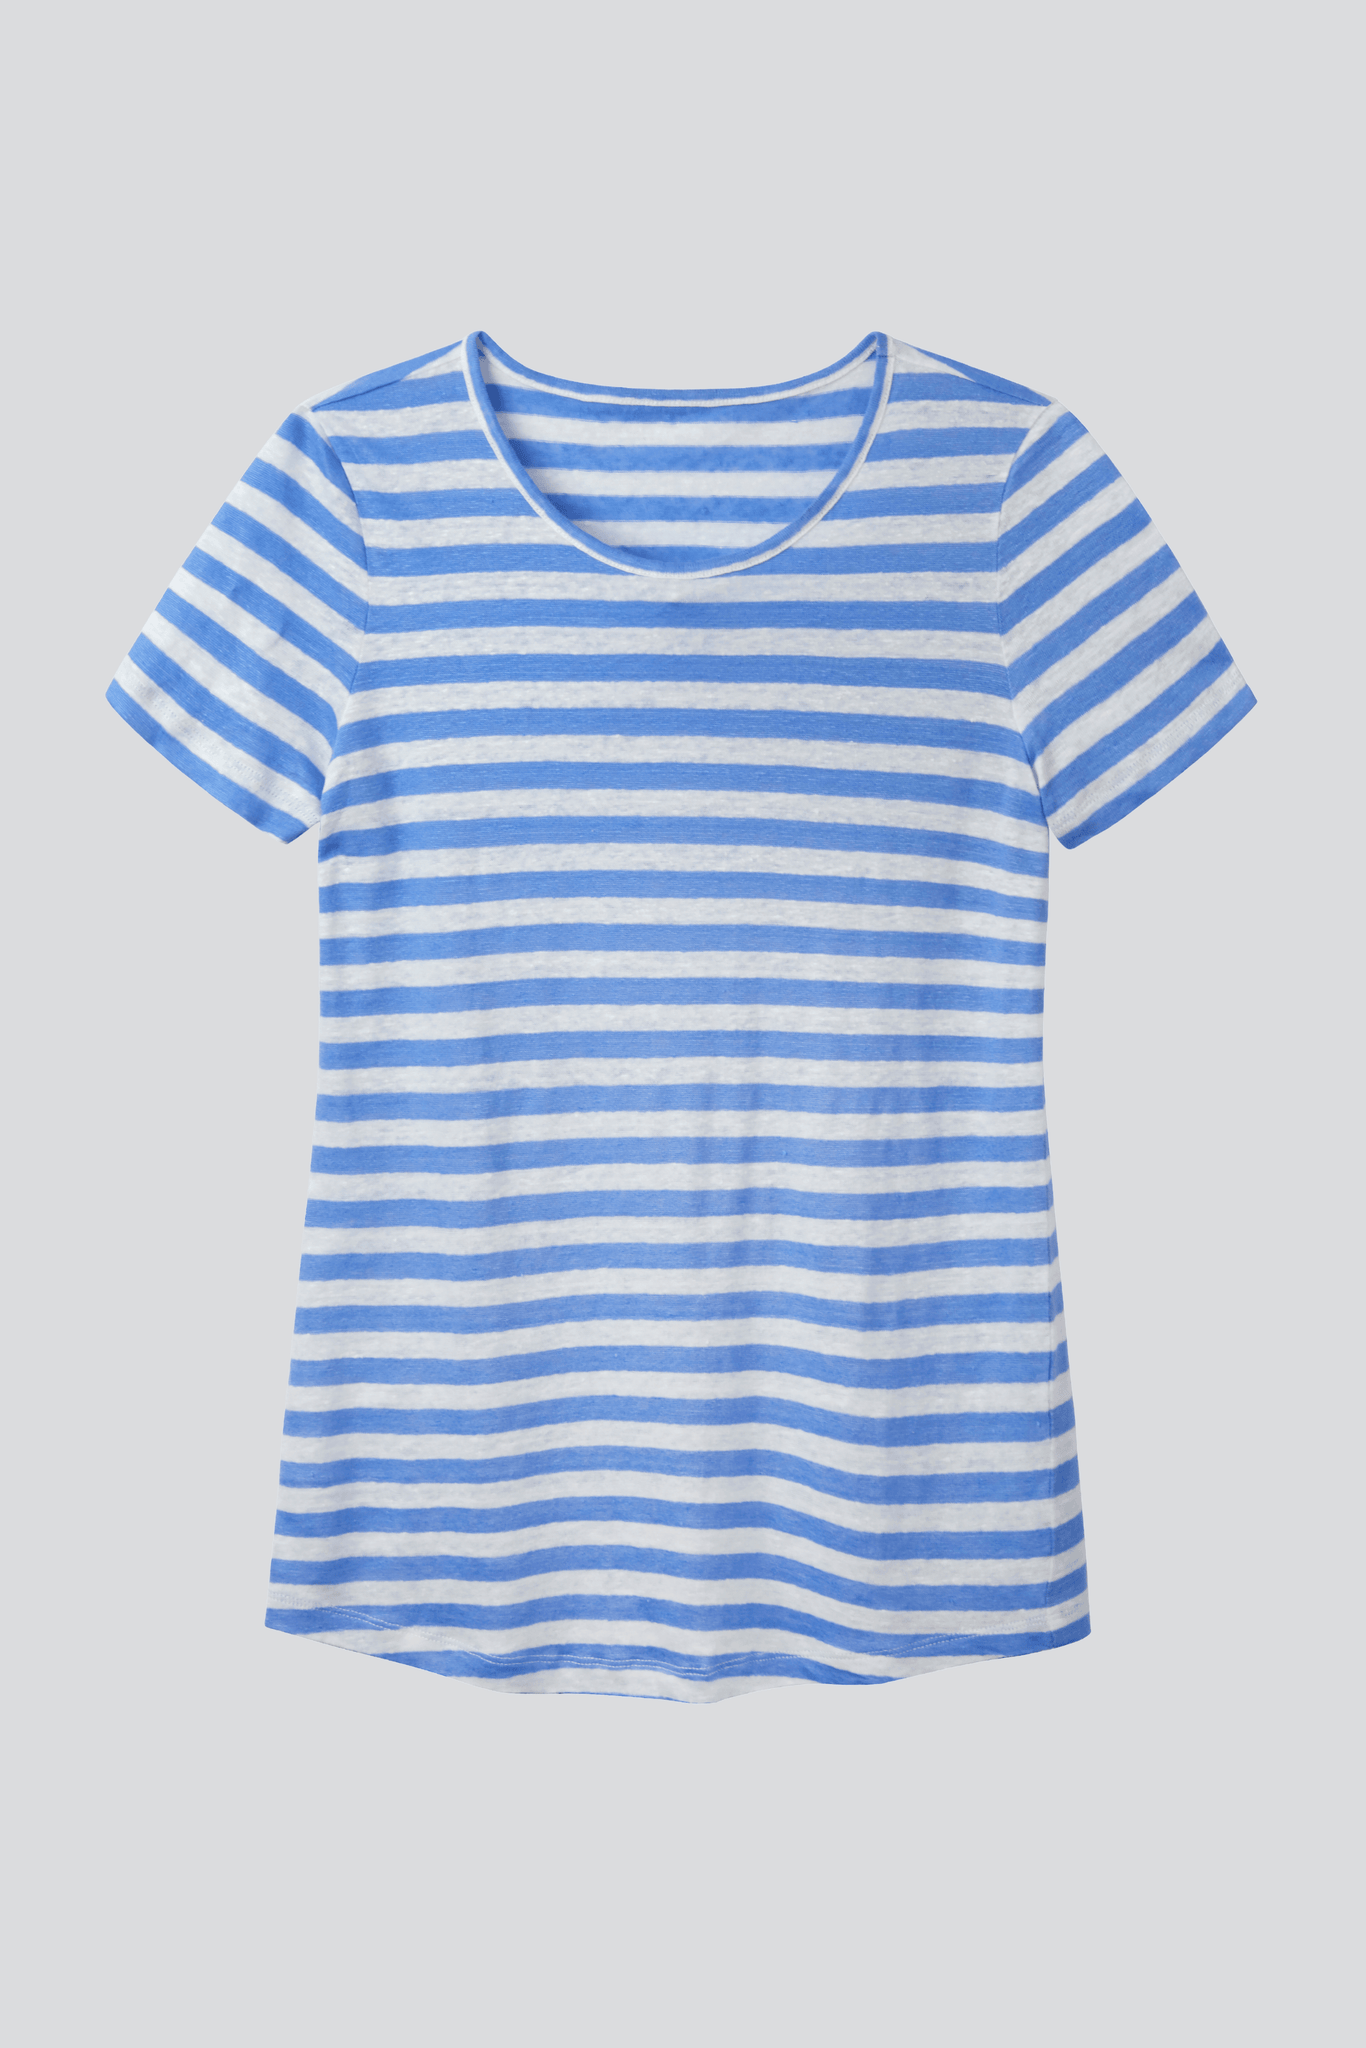 Women's Short Sleeve Striped Linen T-shirt - Blue Short Sleeve T-shirt - Linen T-Shirt - High Quality Women's T-Shirt - Lavender Hill Clothing